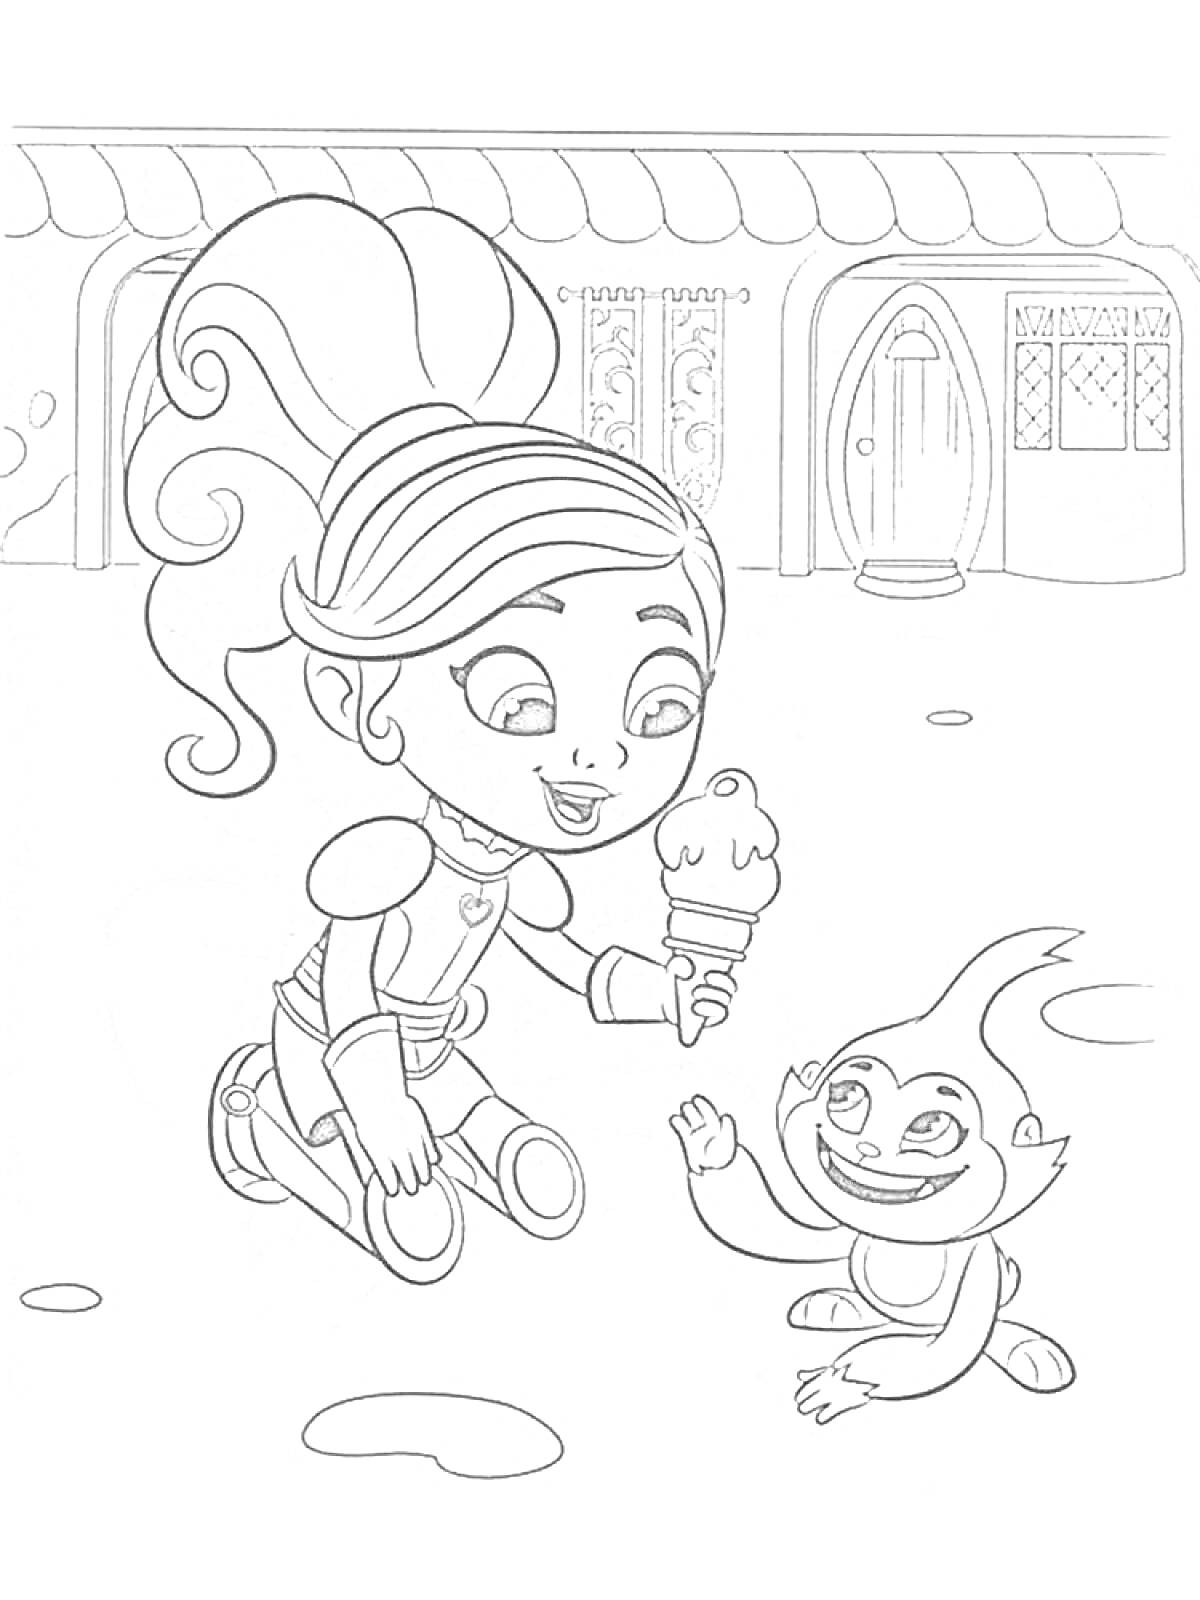 Принцесса рыцарь Нелла с мороженым и маленьким существом перед домом